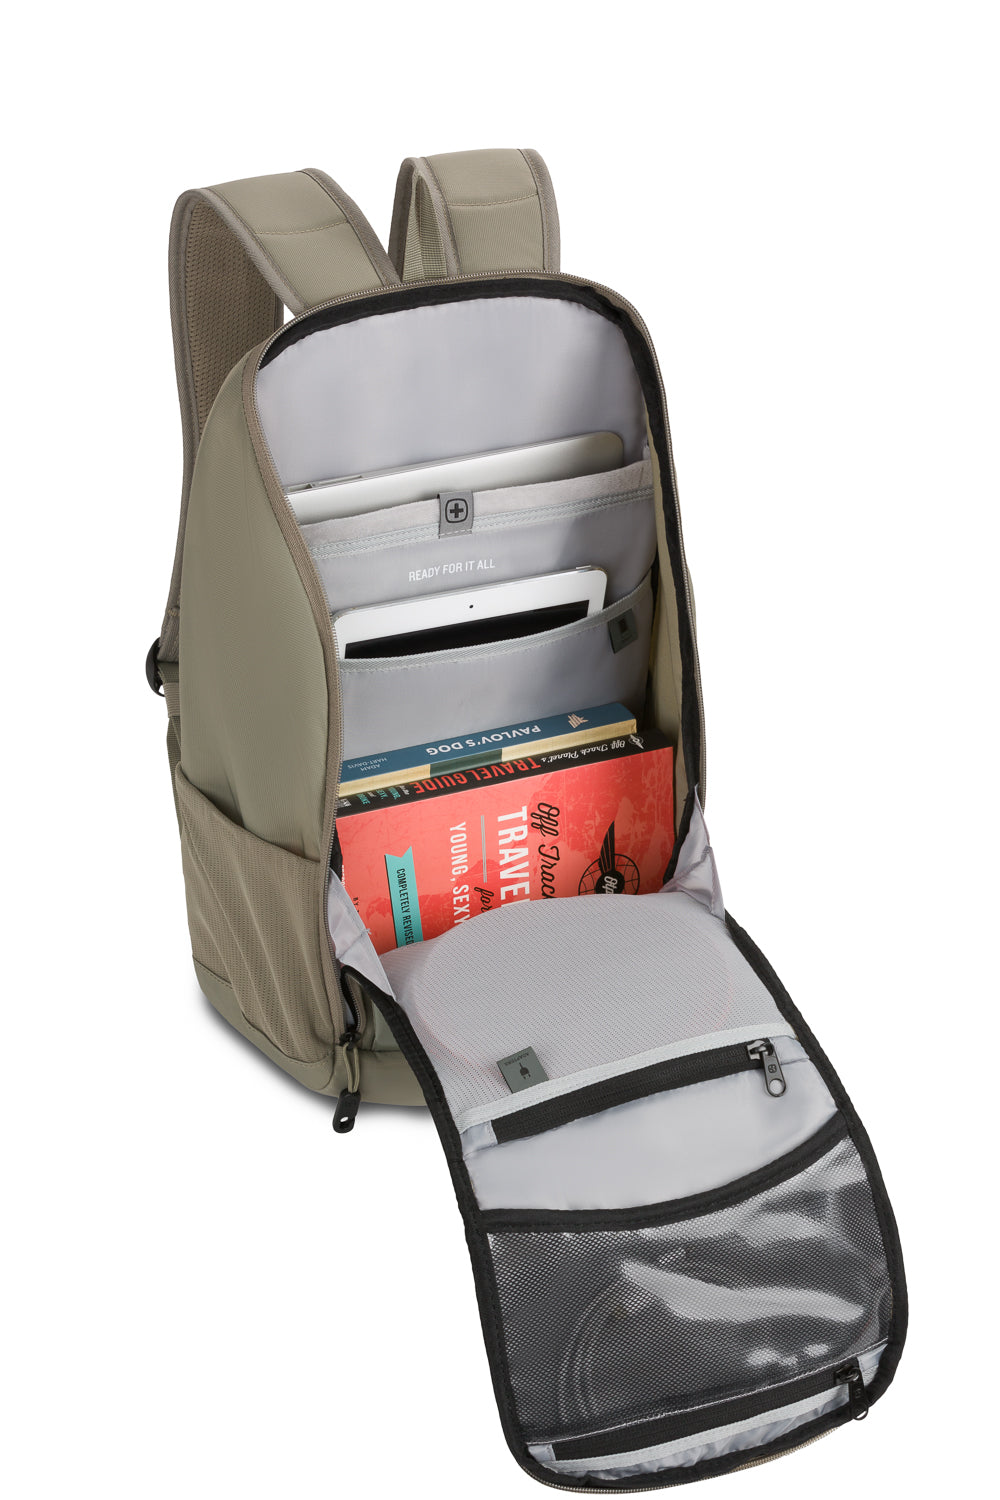 SwissGear 8118 16" Laptop Backpack